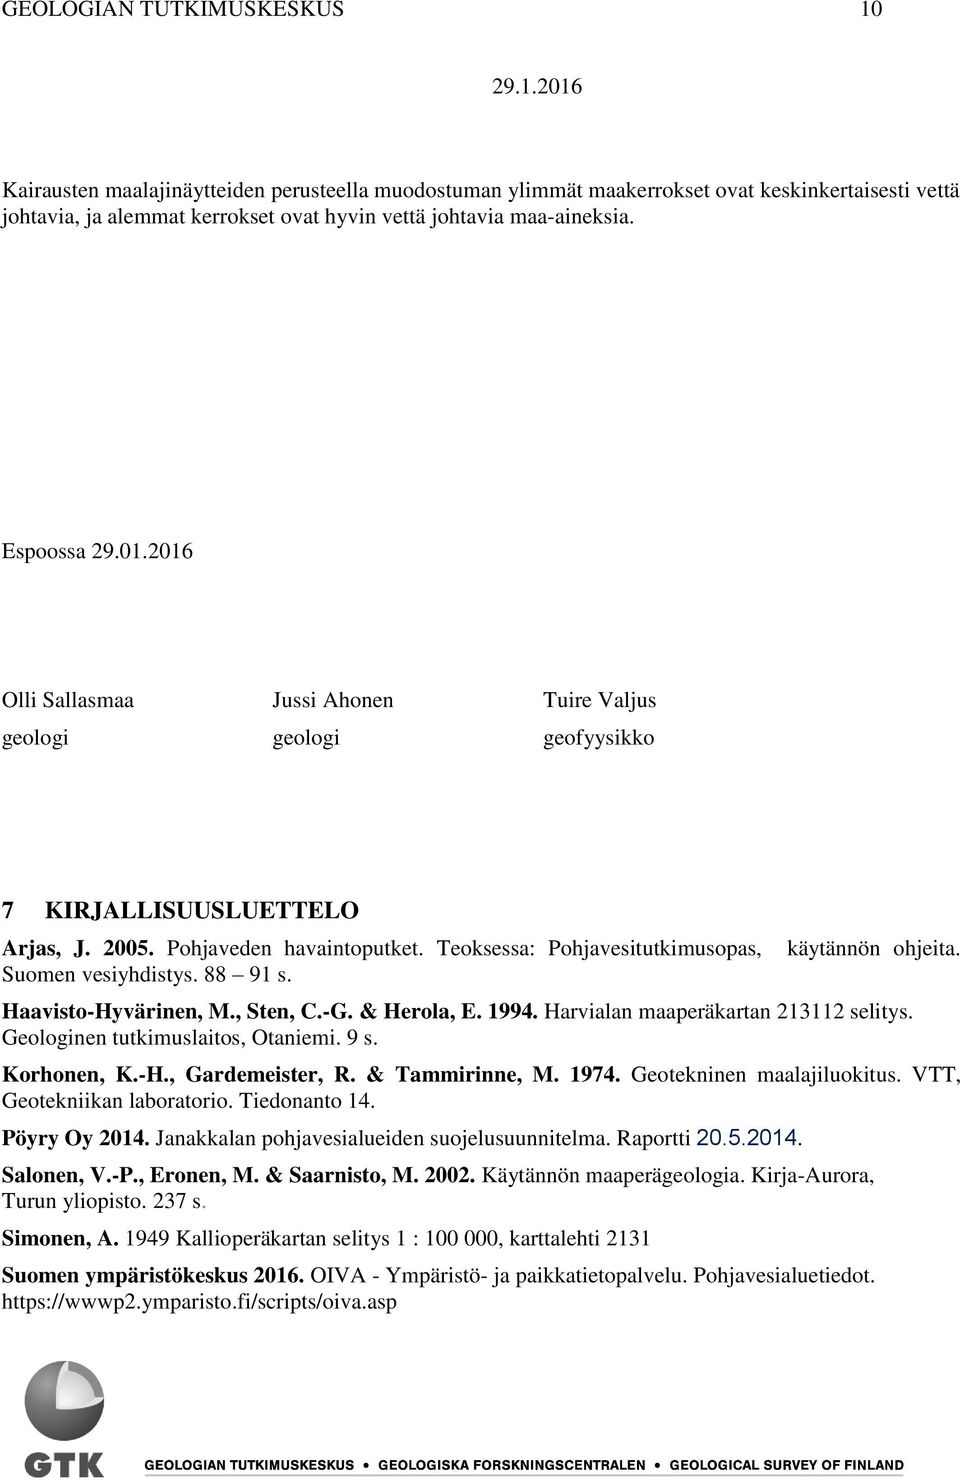 Teoksessa: Pohjavesitutkimusopas, Suomen vesiyhdistys. 88 91 s. käytännön ohjeita. Haavisto-Hyvärinen, M., Sten, C.-G. & Herola, E. 1994. Harvialan maaperäkartan 213112 selitys.